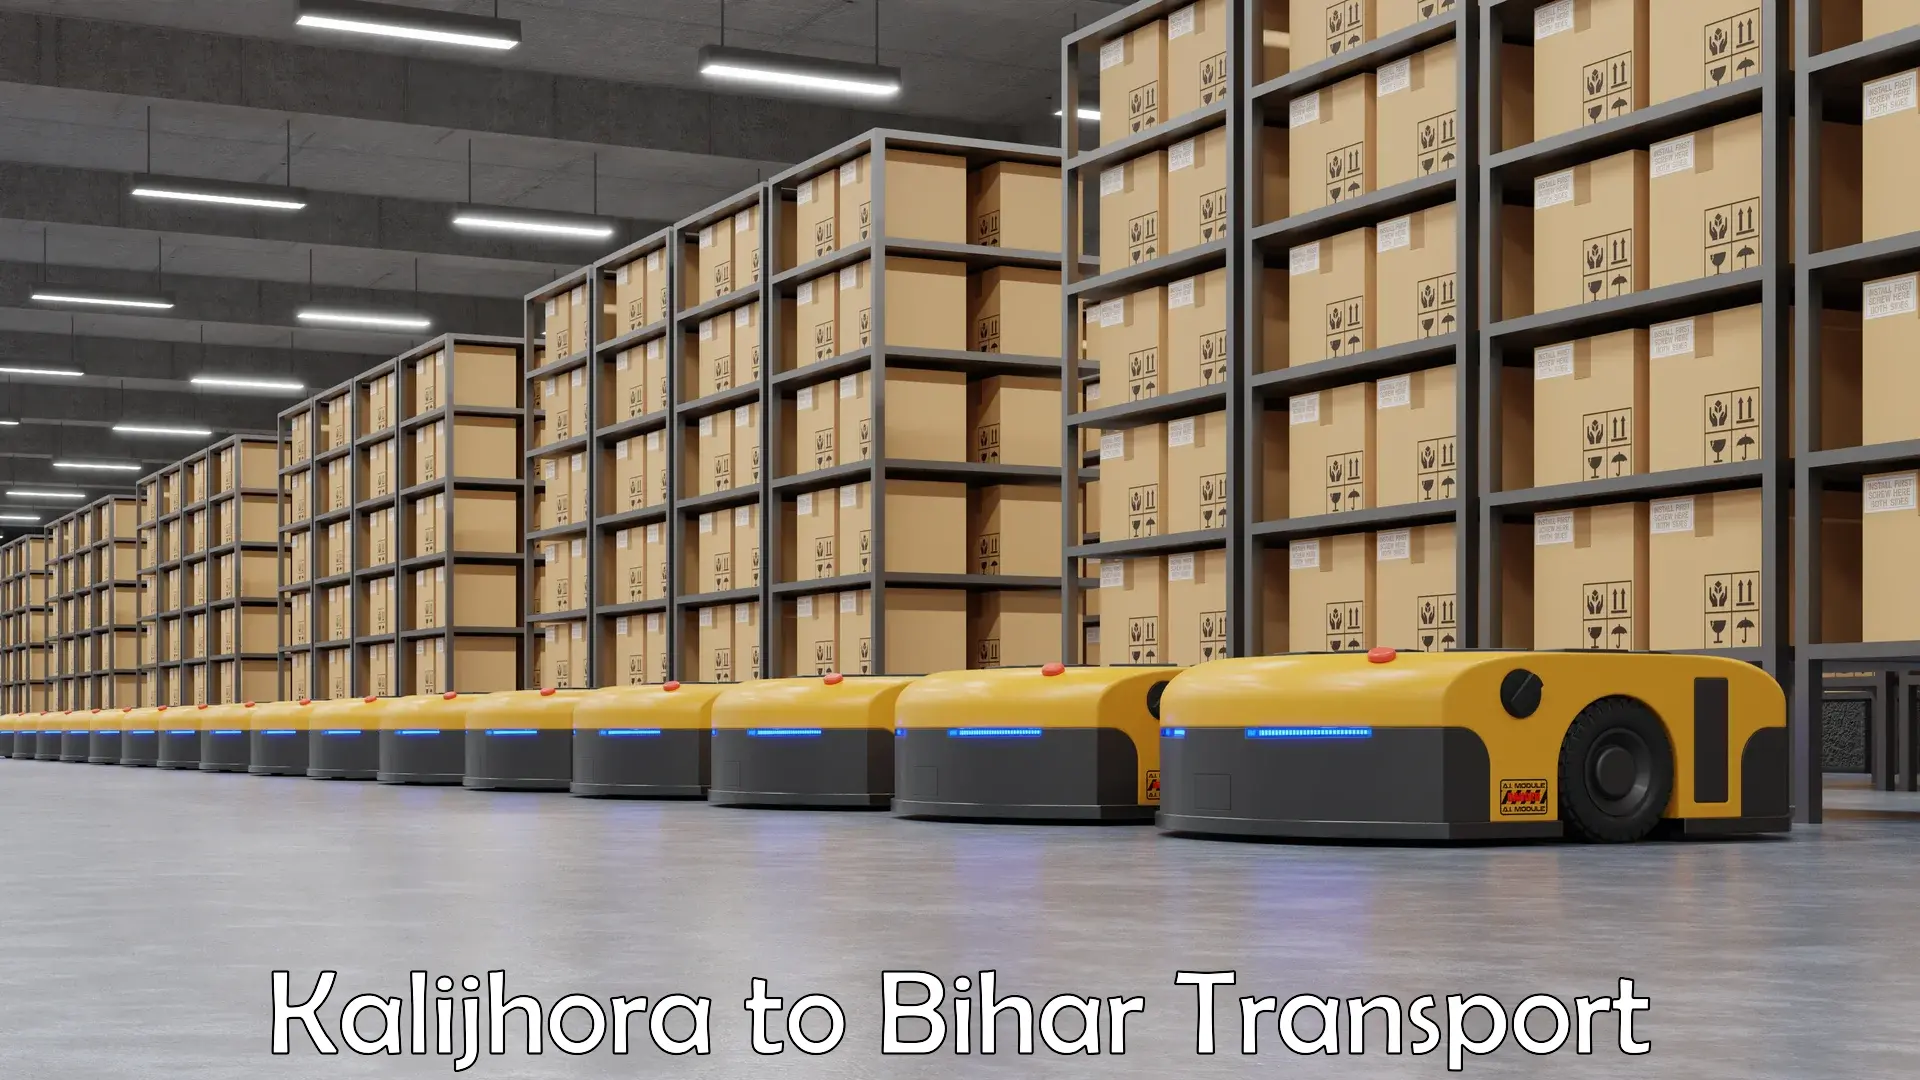 Lorry transport service Kalijhora to Bihar